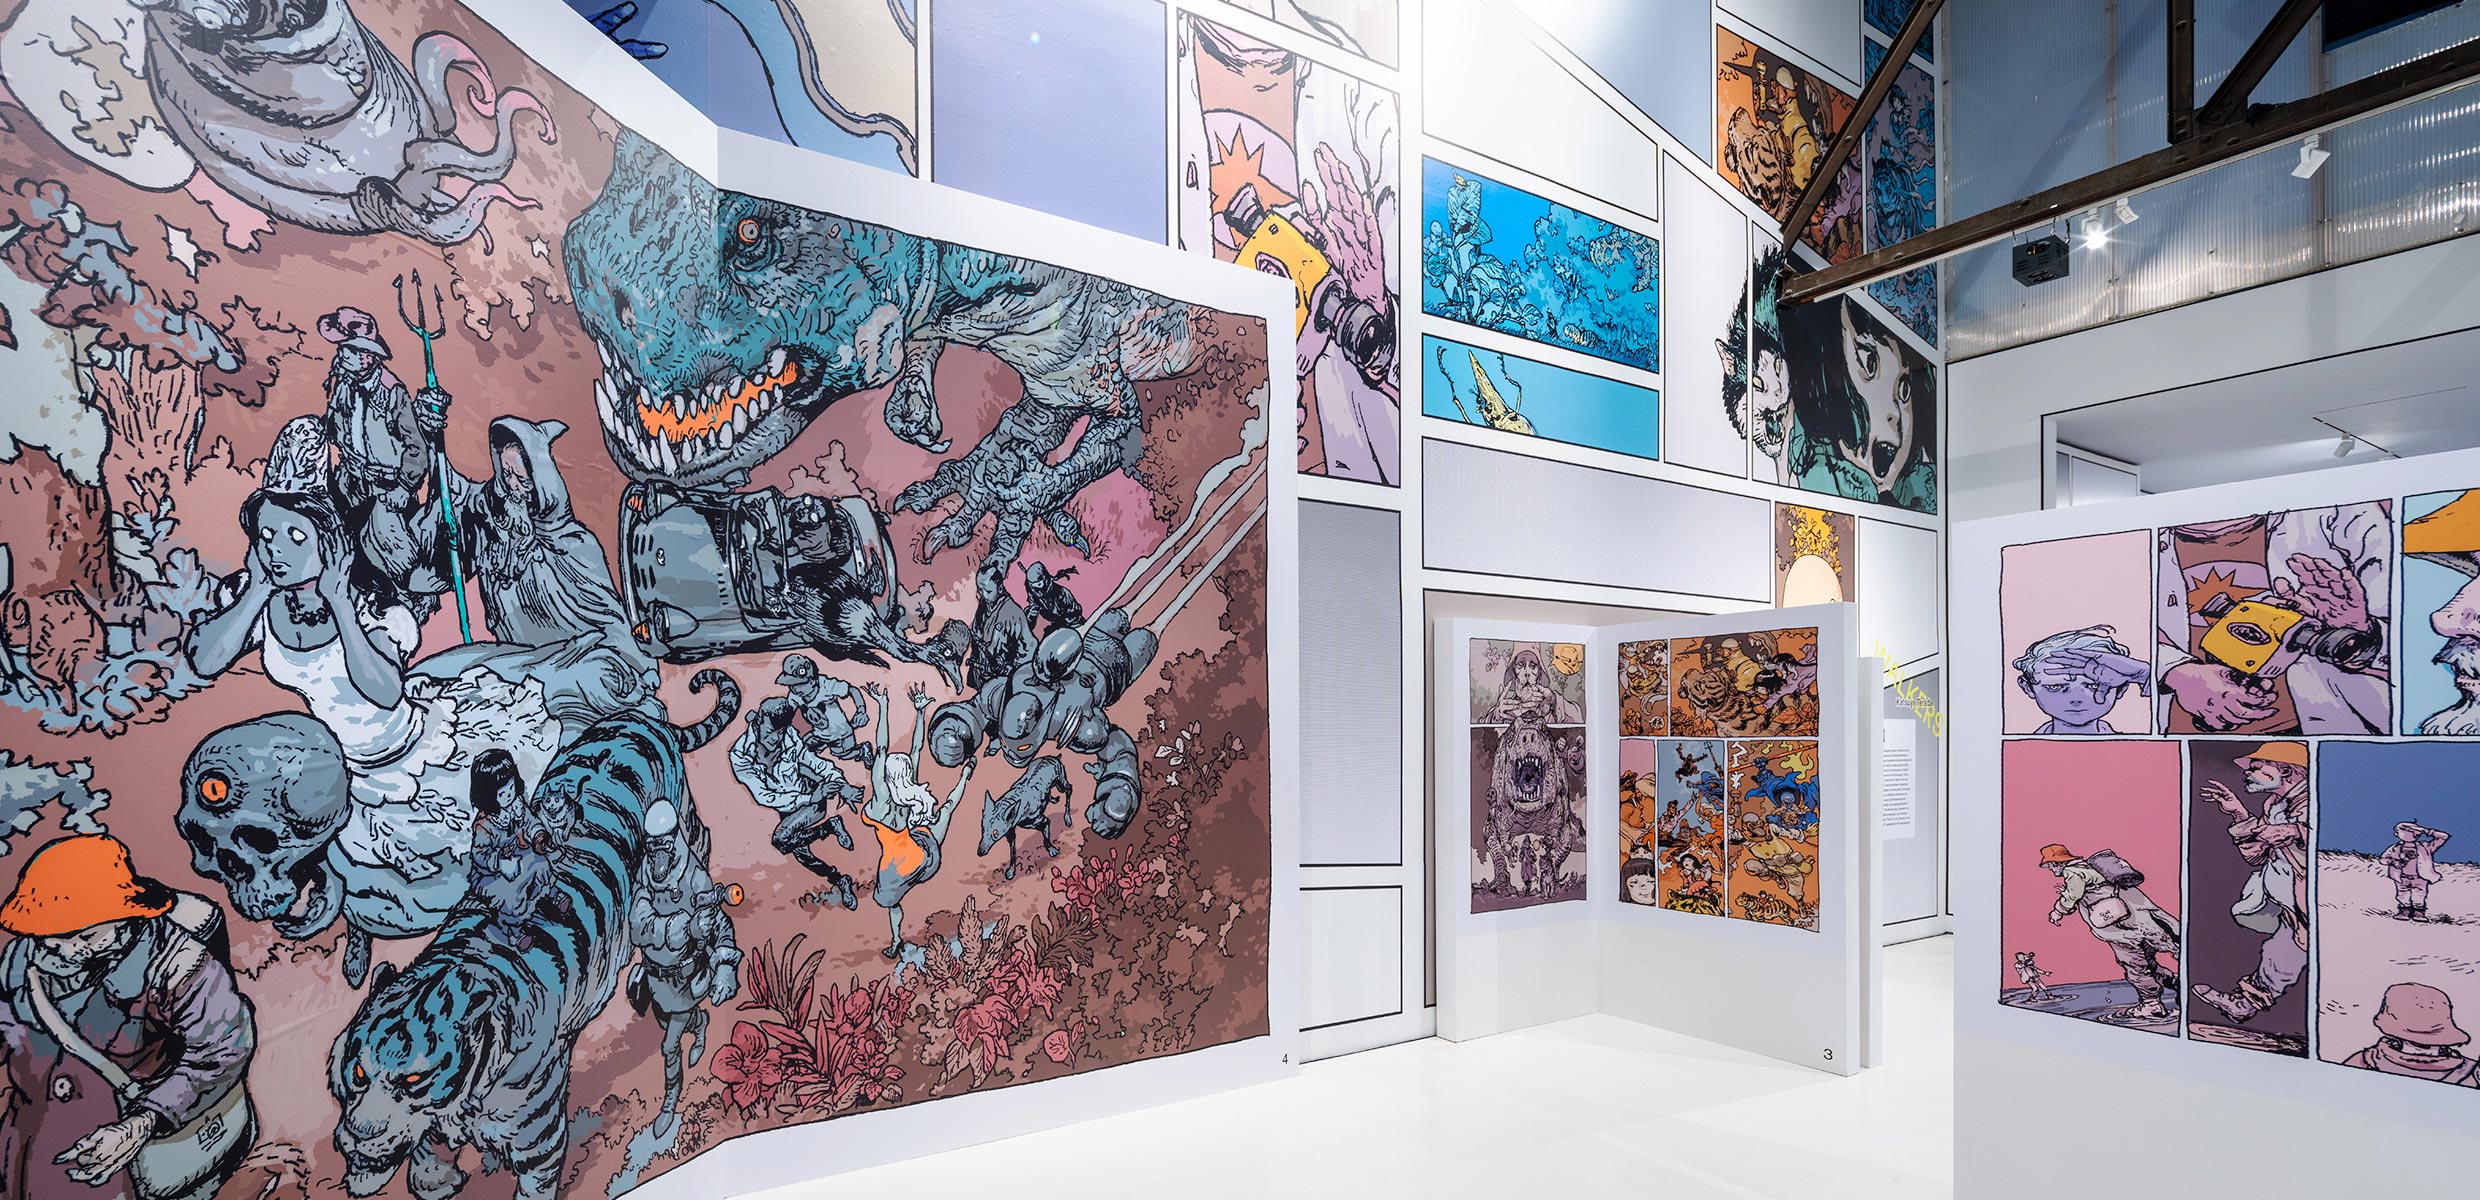 エキシビション会場内、寺田克也によるマンガ『Walkers』の展示ゾーン。マンガのページやコマが大きく壁面に掲出されている。